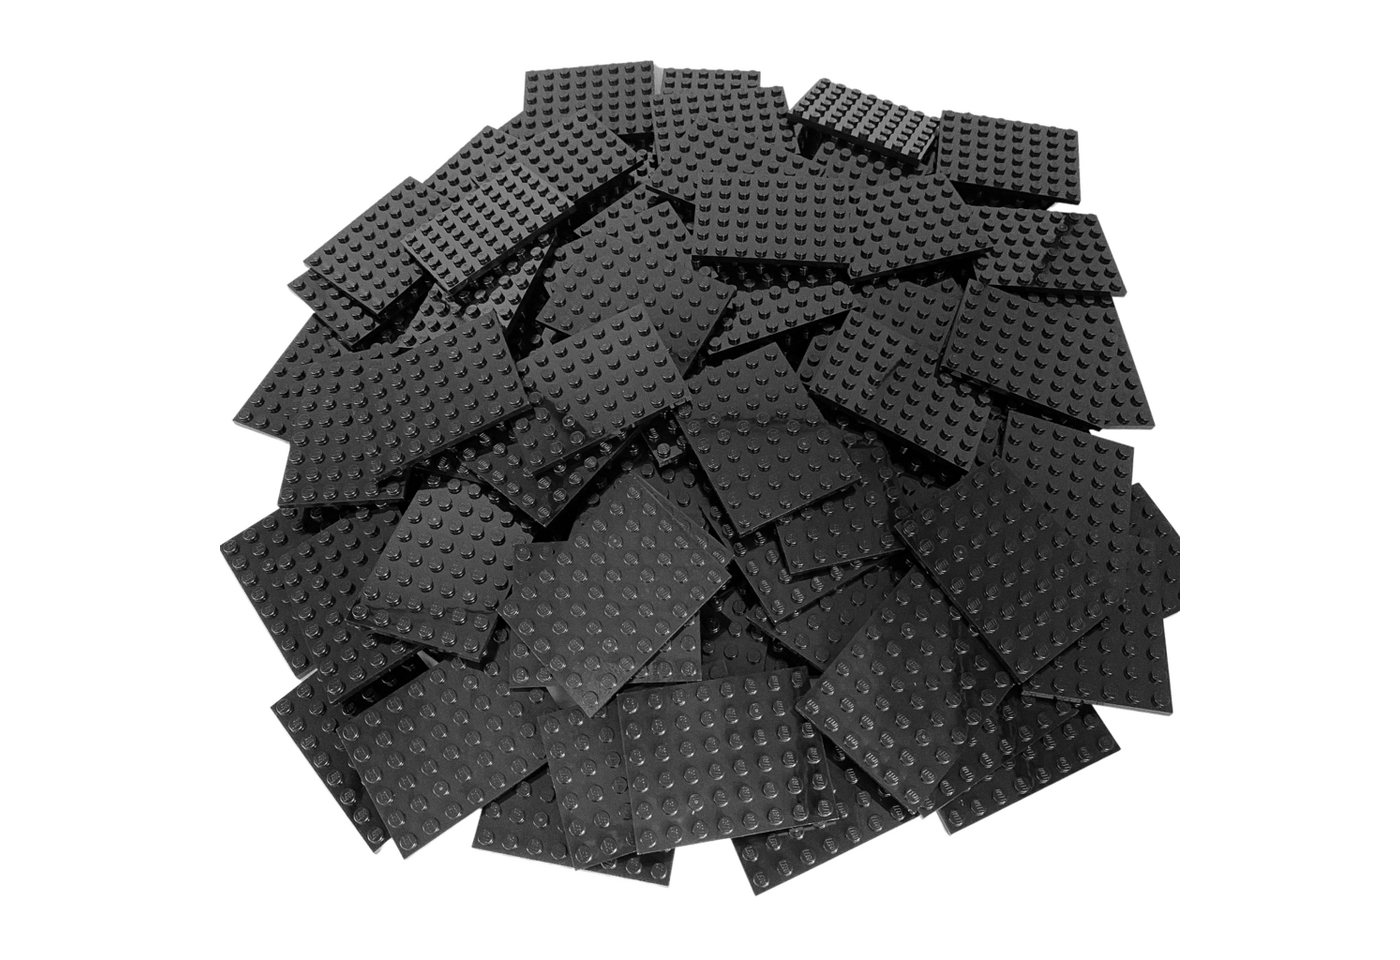 LEGO® Spielbausteine LEGO® 6x8 Platten Bauplatten Schwarz - 3036 NEU! Menge günstig online kaufen